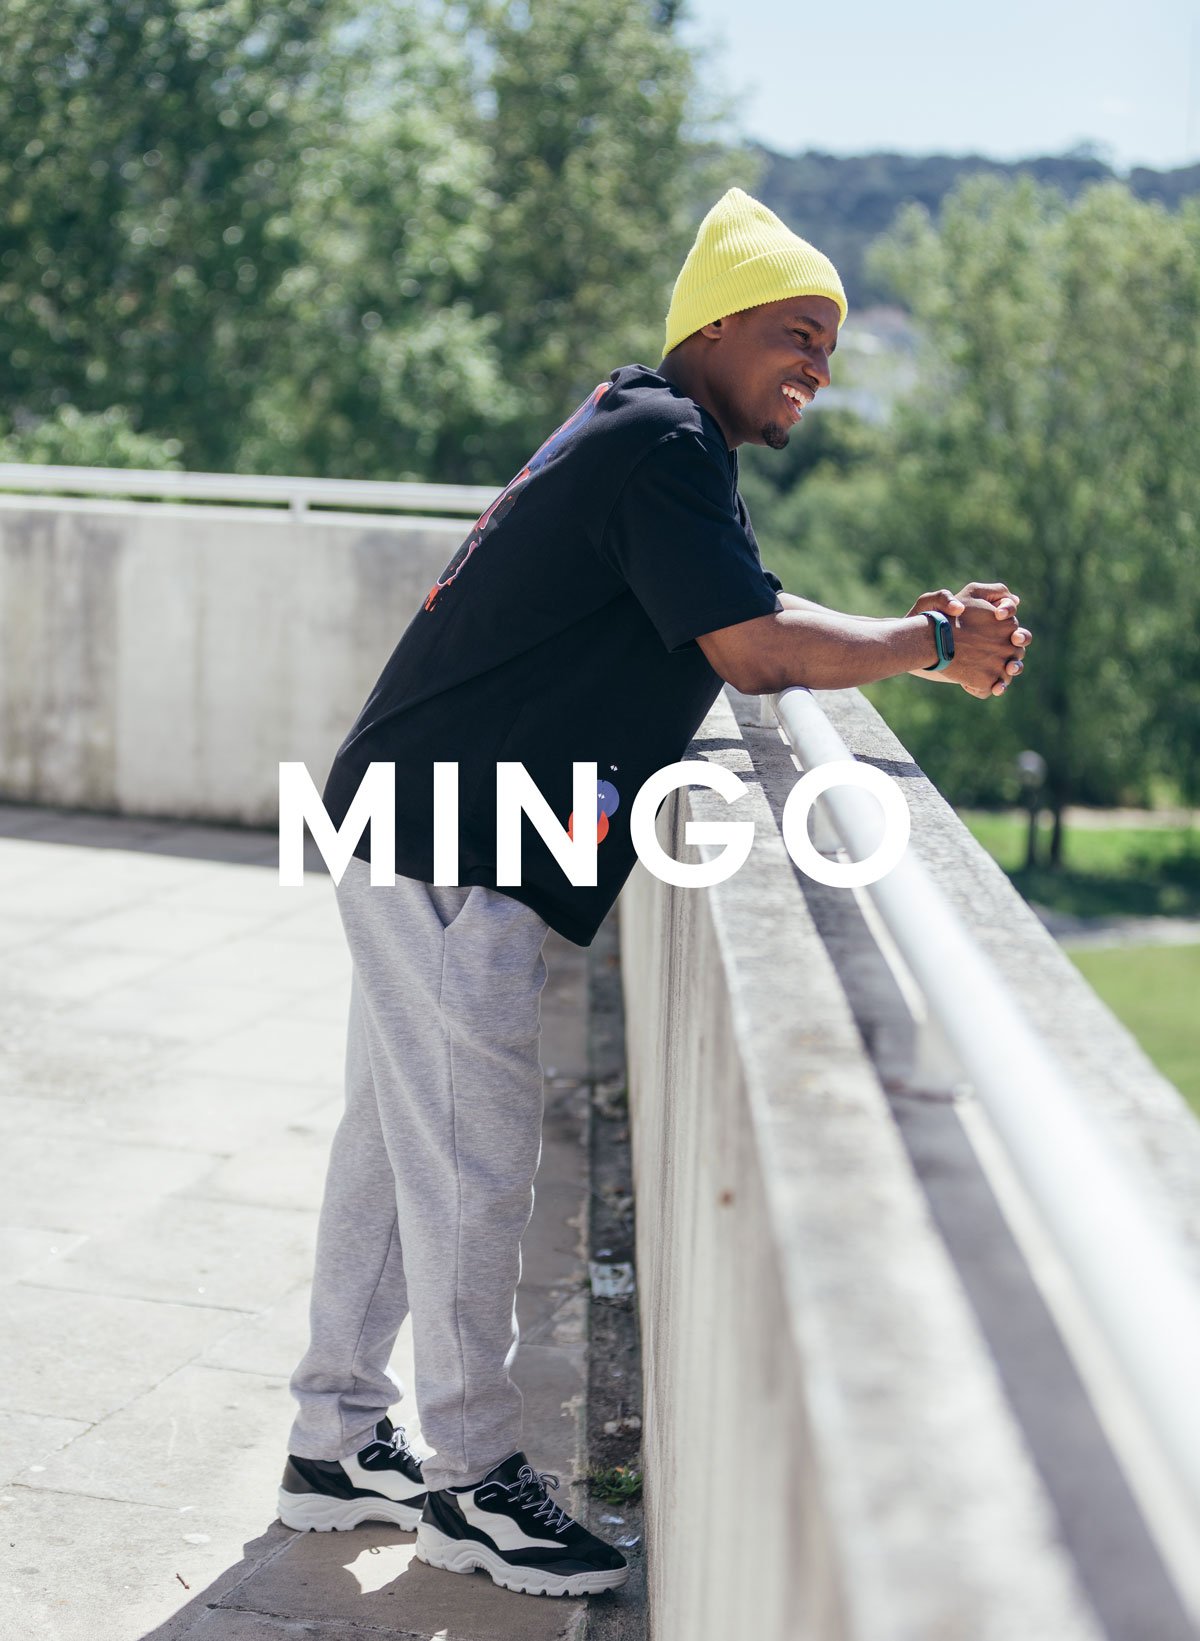 Mingo apoyado contra una pared, Diverge sneakers, promoviendo el impacto social y el calzado personalizado a través del proyecto Imagine.